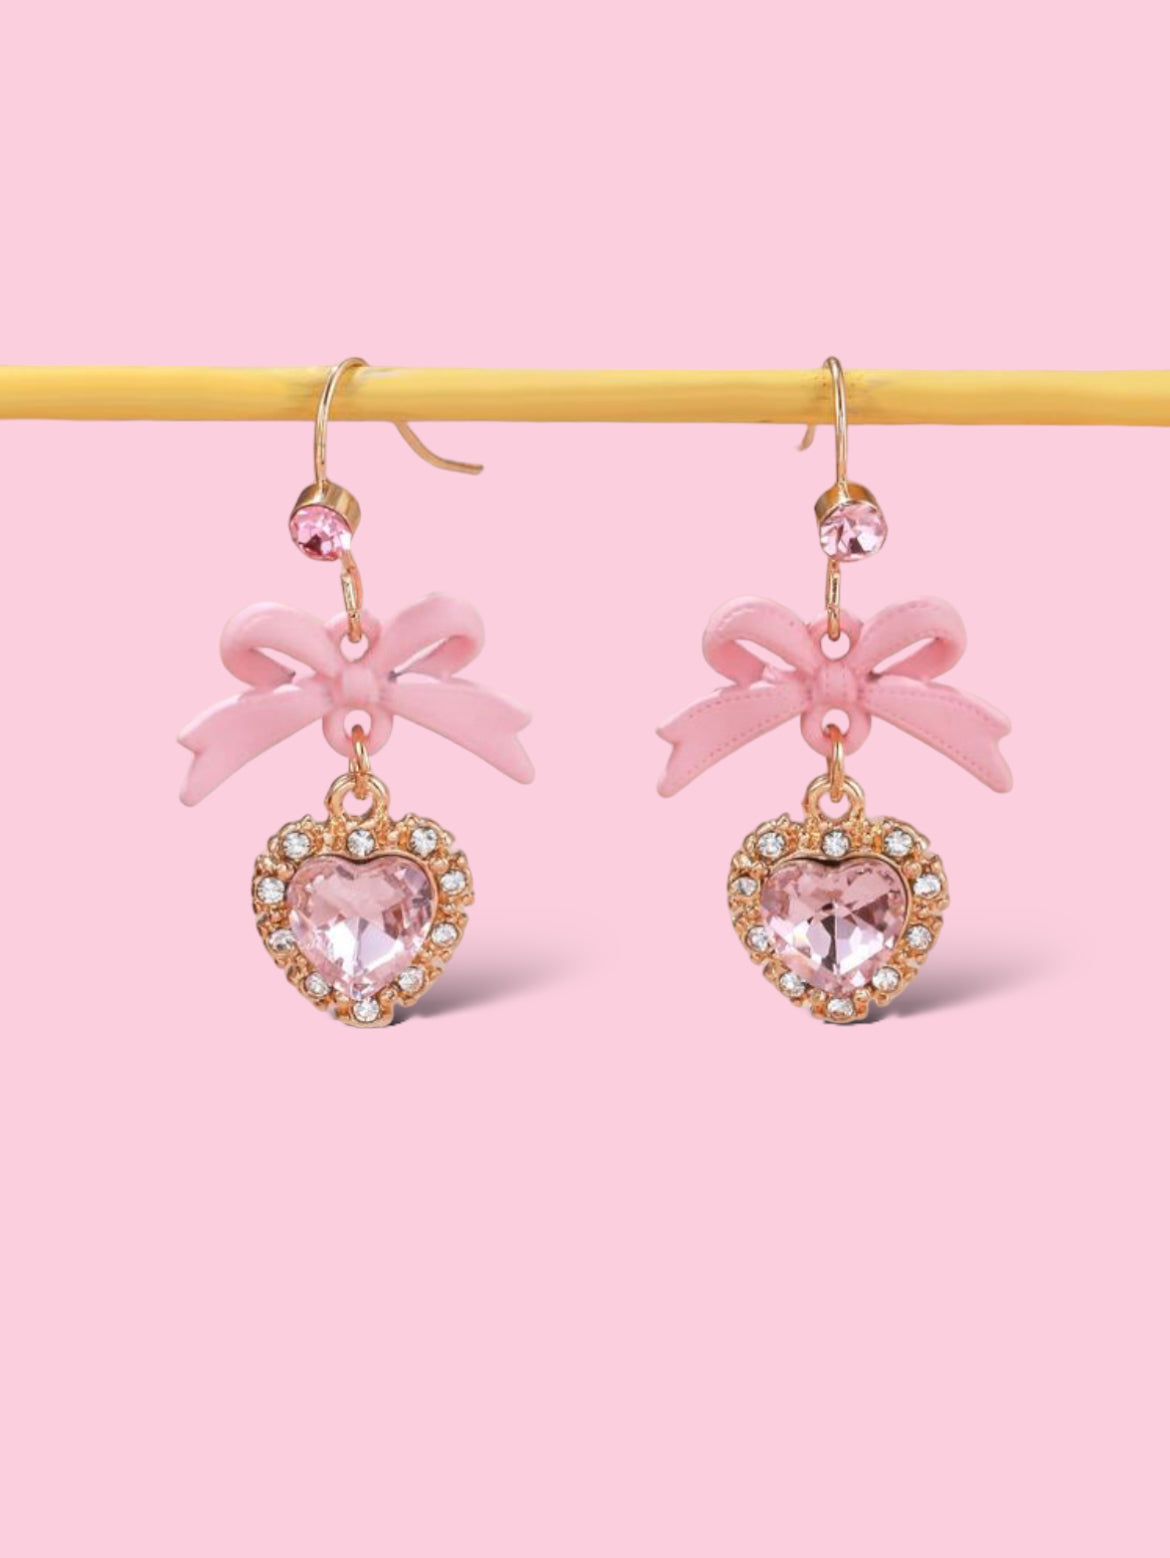 Sweetheart Barbie style earrings